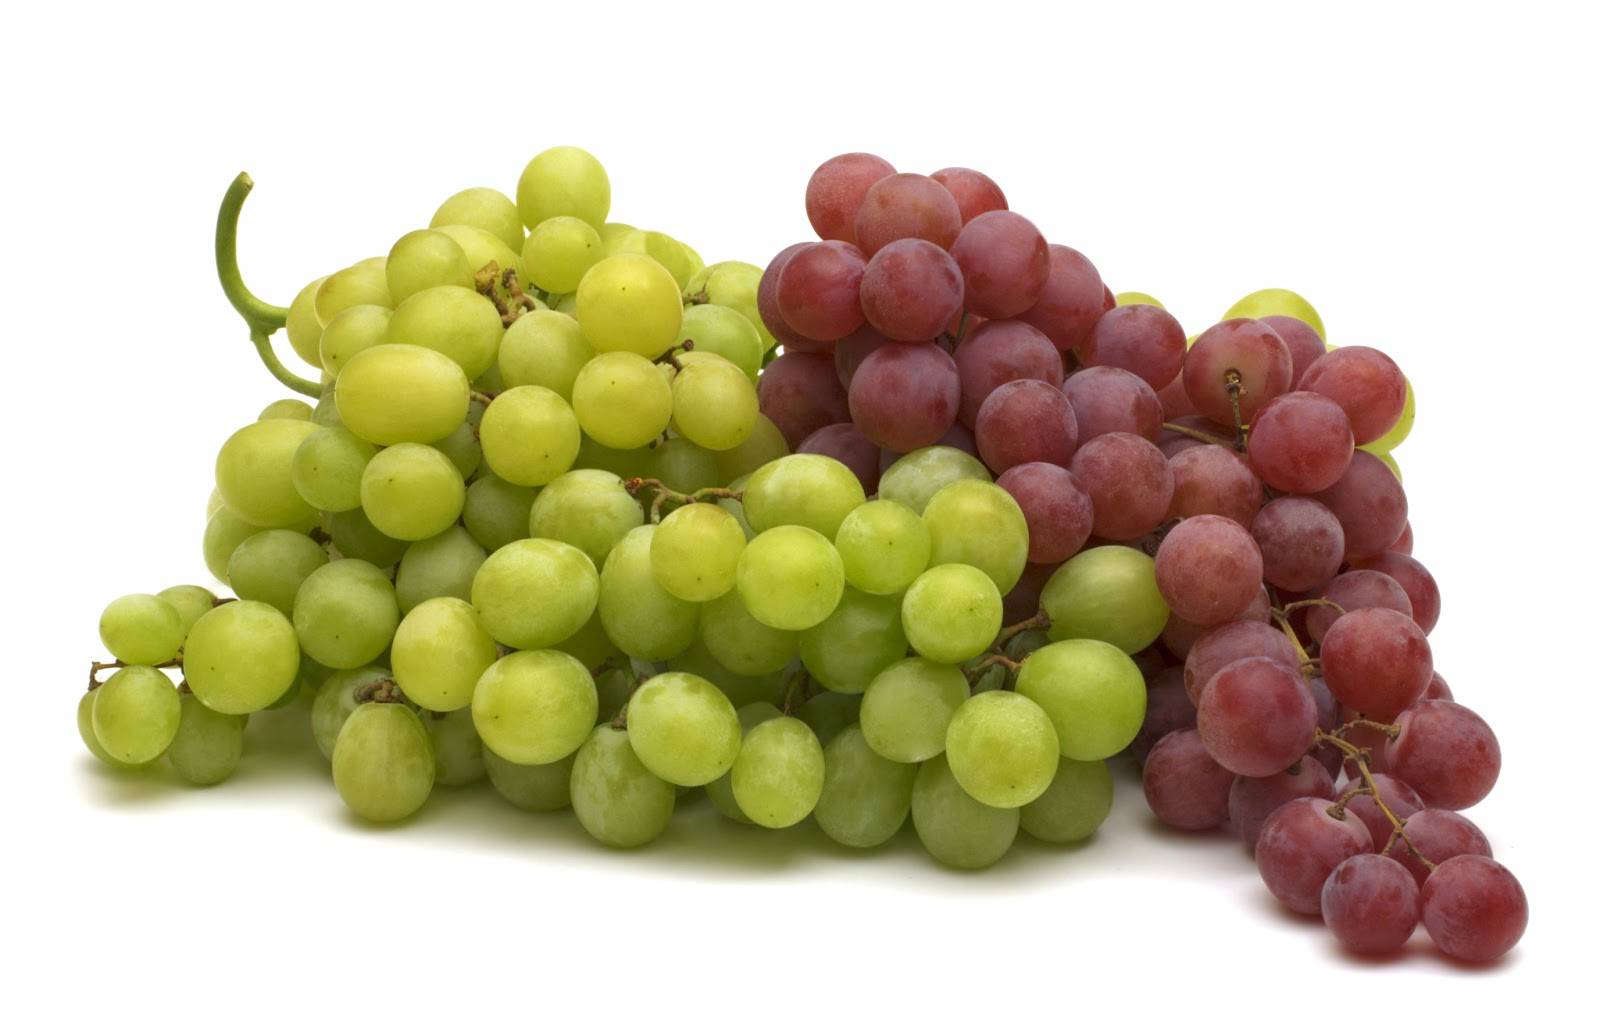 Mangiare l'uva aiuta a prevenire l'Alzheimer